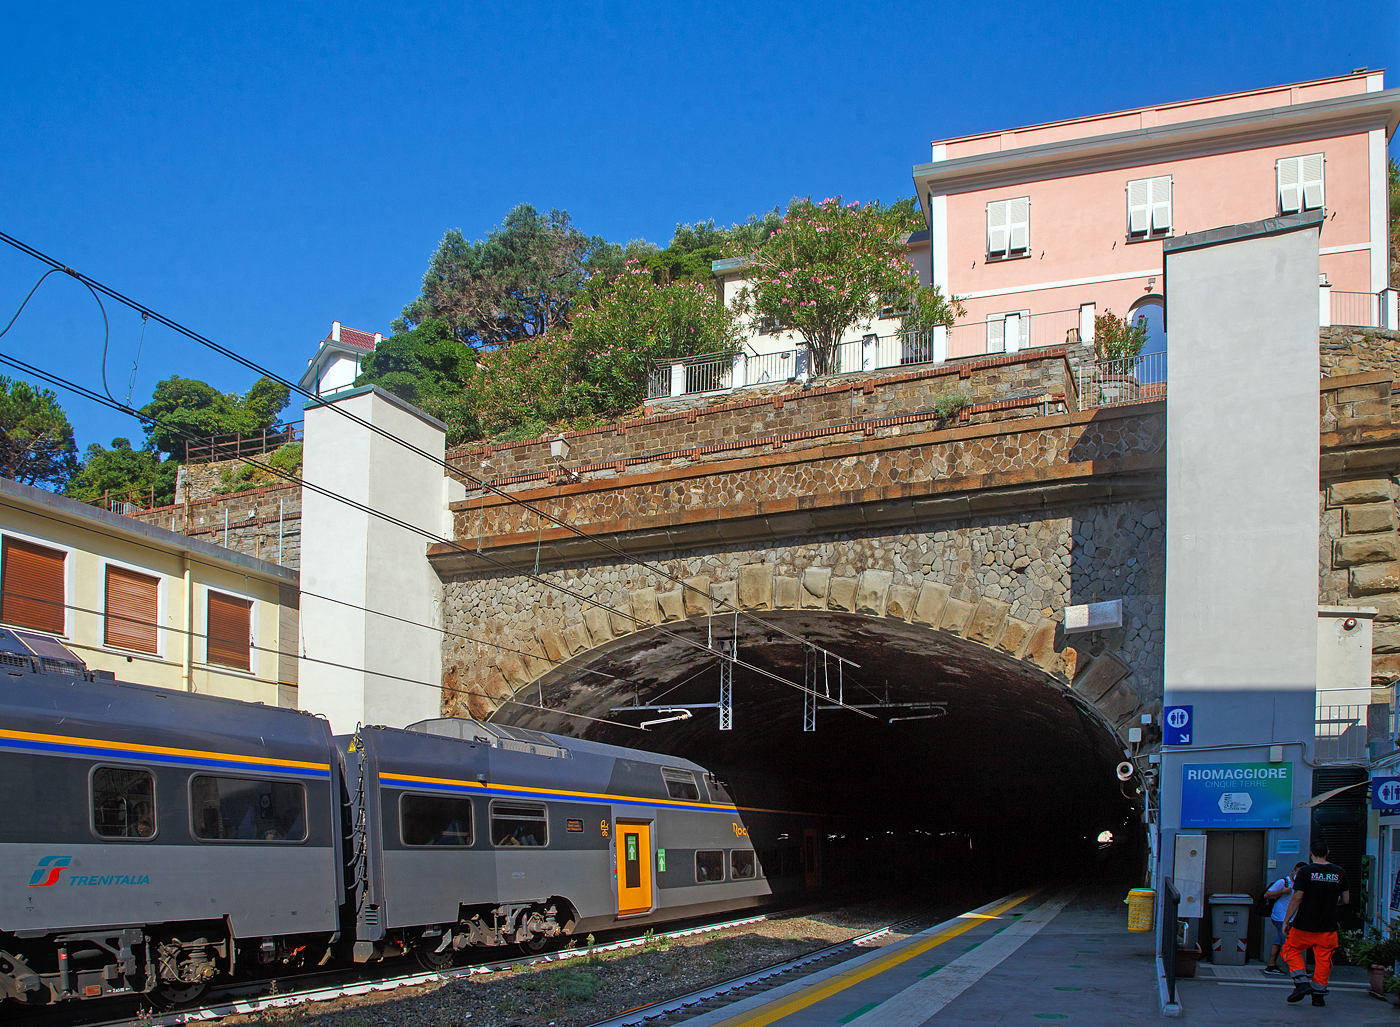 Der Trenitalia “Rock” ETR 521-048, ein fünfteiliger Elektrotriebzug vom Typ Hitachi Caravaggio, hat am 22.07.2022 den Bahnhof Riomaggiore (Cinque Terre) erreicht. Er fährt als Cinque Terre Express (Regionale) von La Spezia Levanto, via Riomaggiore, Manarola, Corniglia, Vernazza, Monterosso, nach Levanto. Der Bahnhof von Riomaggiore liegt am nordwestlichen Ortsrand, nur drei bis vier Wagenlängen befinden sich unter freiem Himmel, der Rest in den beiden Tunneln (davor und dahinter).